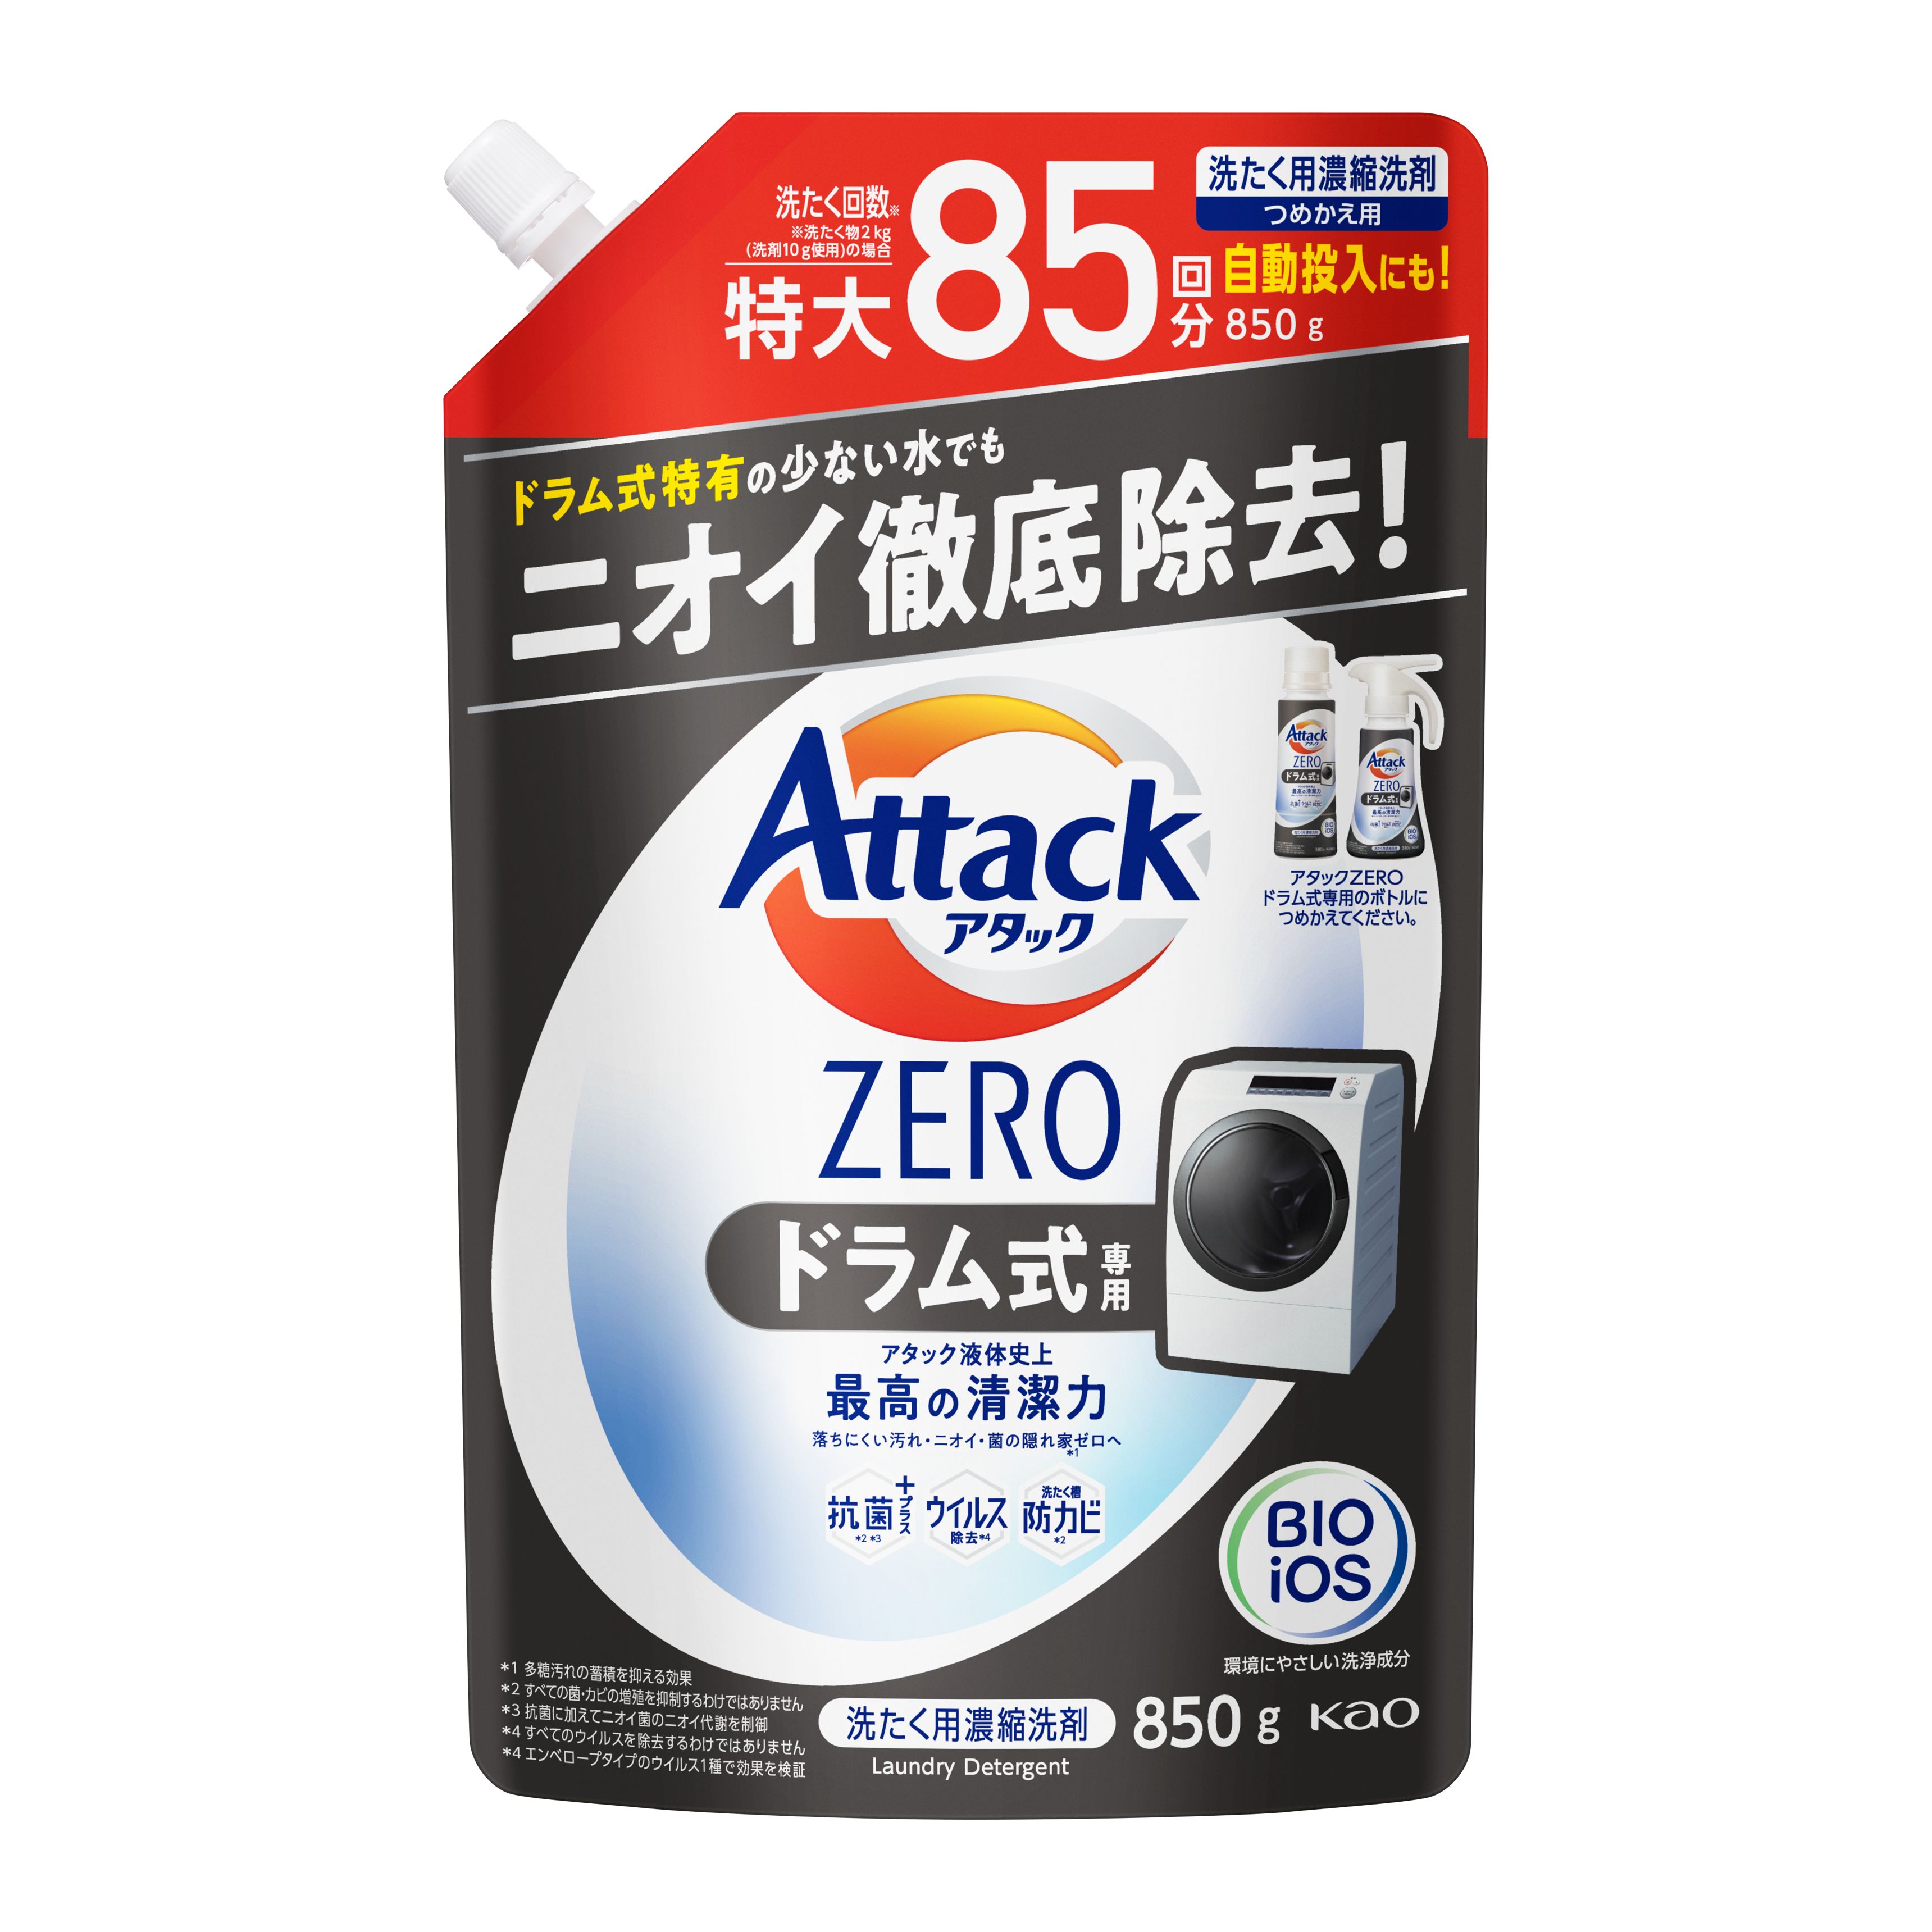 AttackZERO抗菌濃縮洗衣精補充包(滾筒洗衣機/綠葉微風香)850g